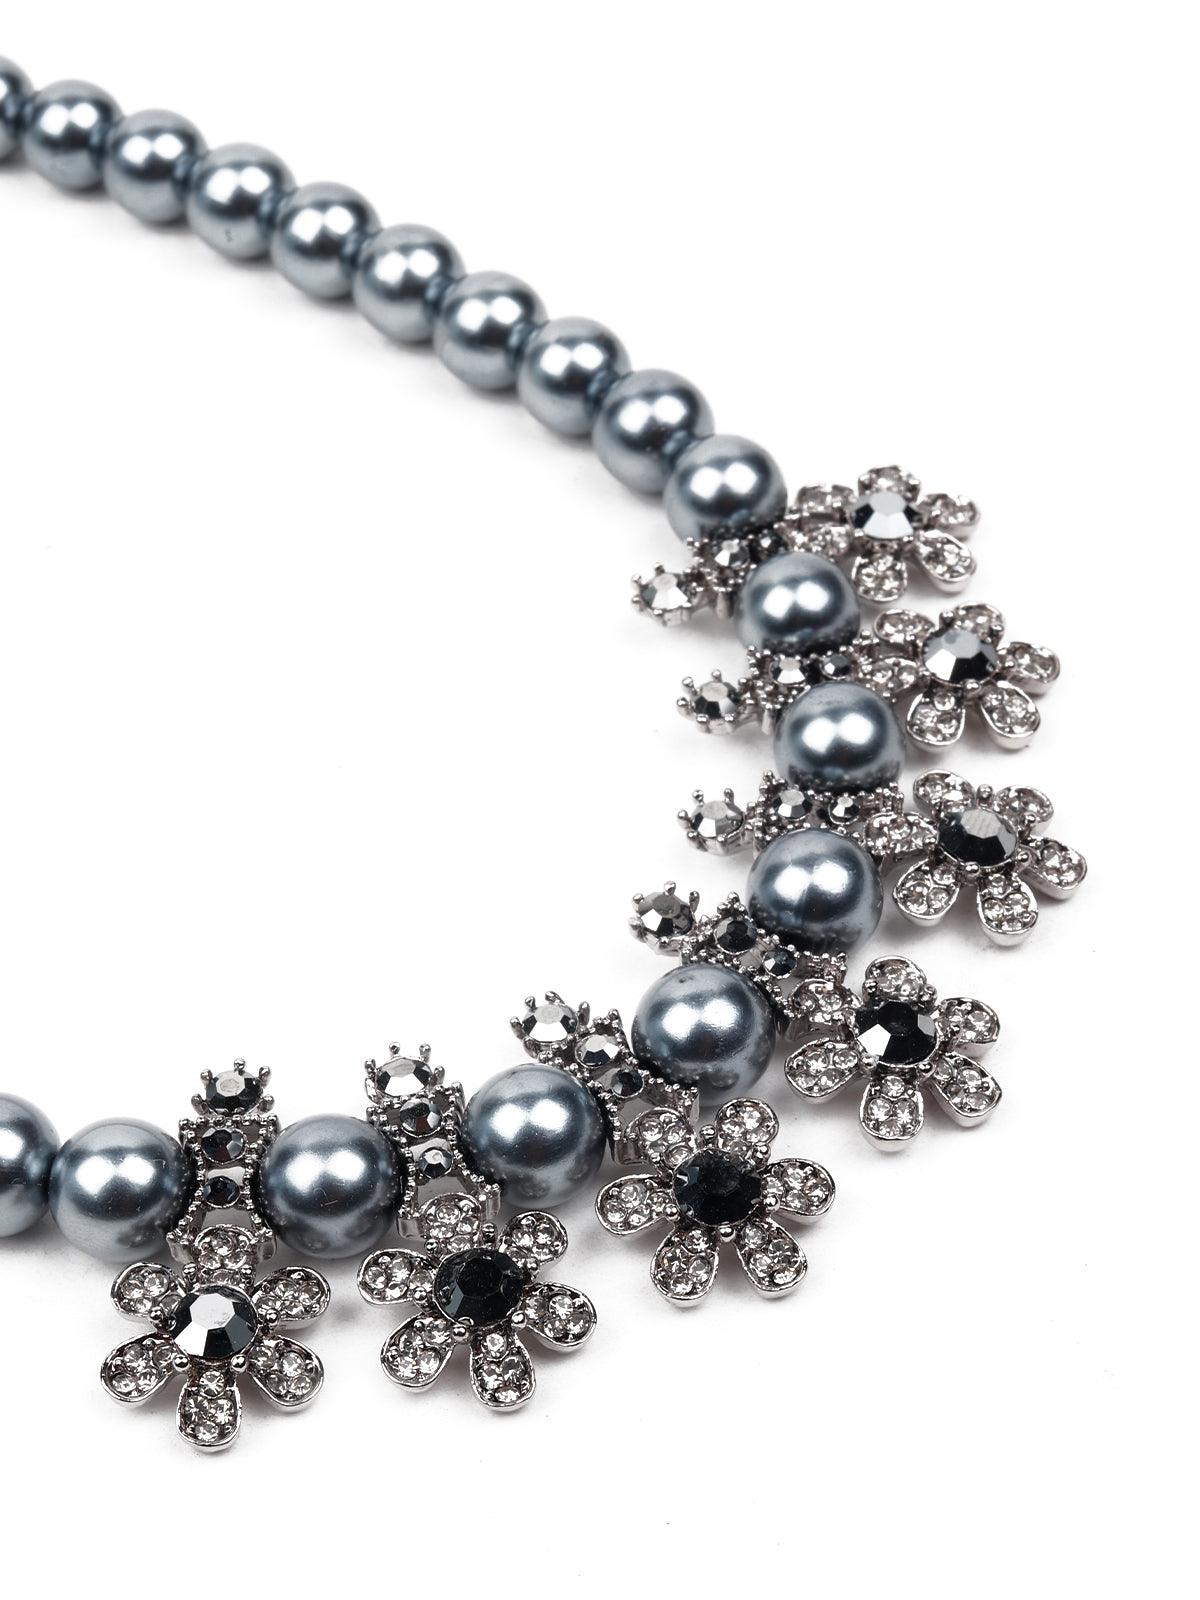 Moonlight beaded embellished necklace - Odette